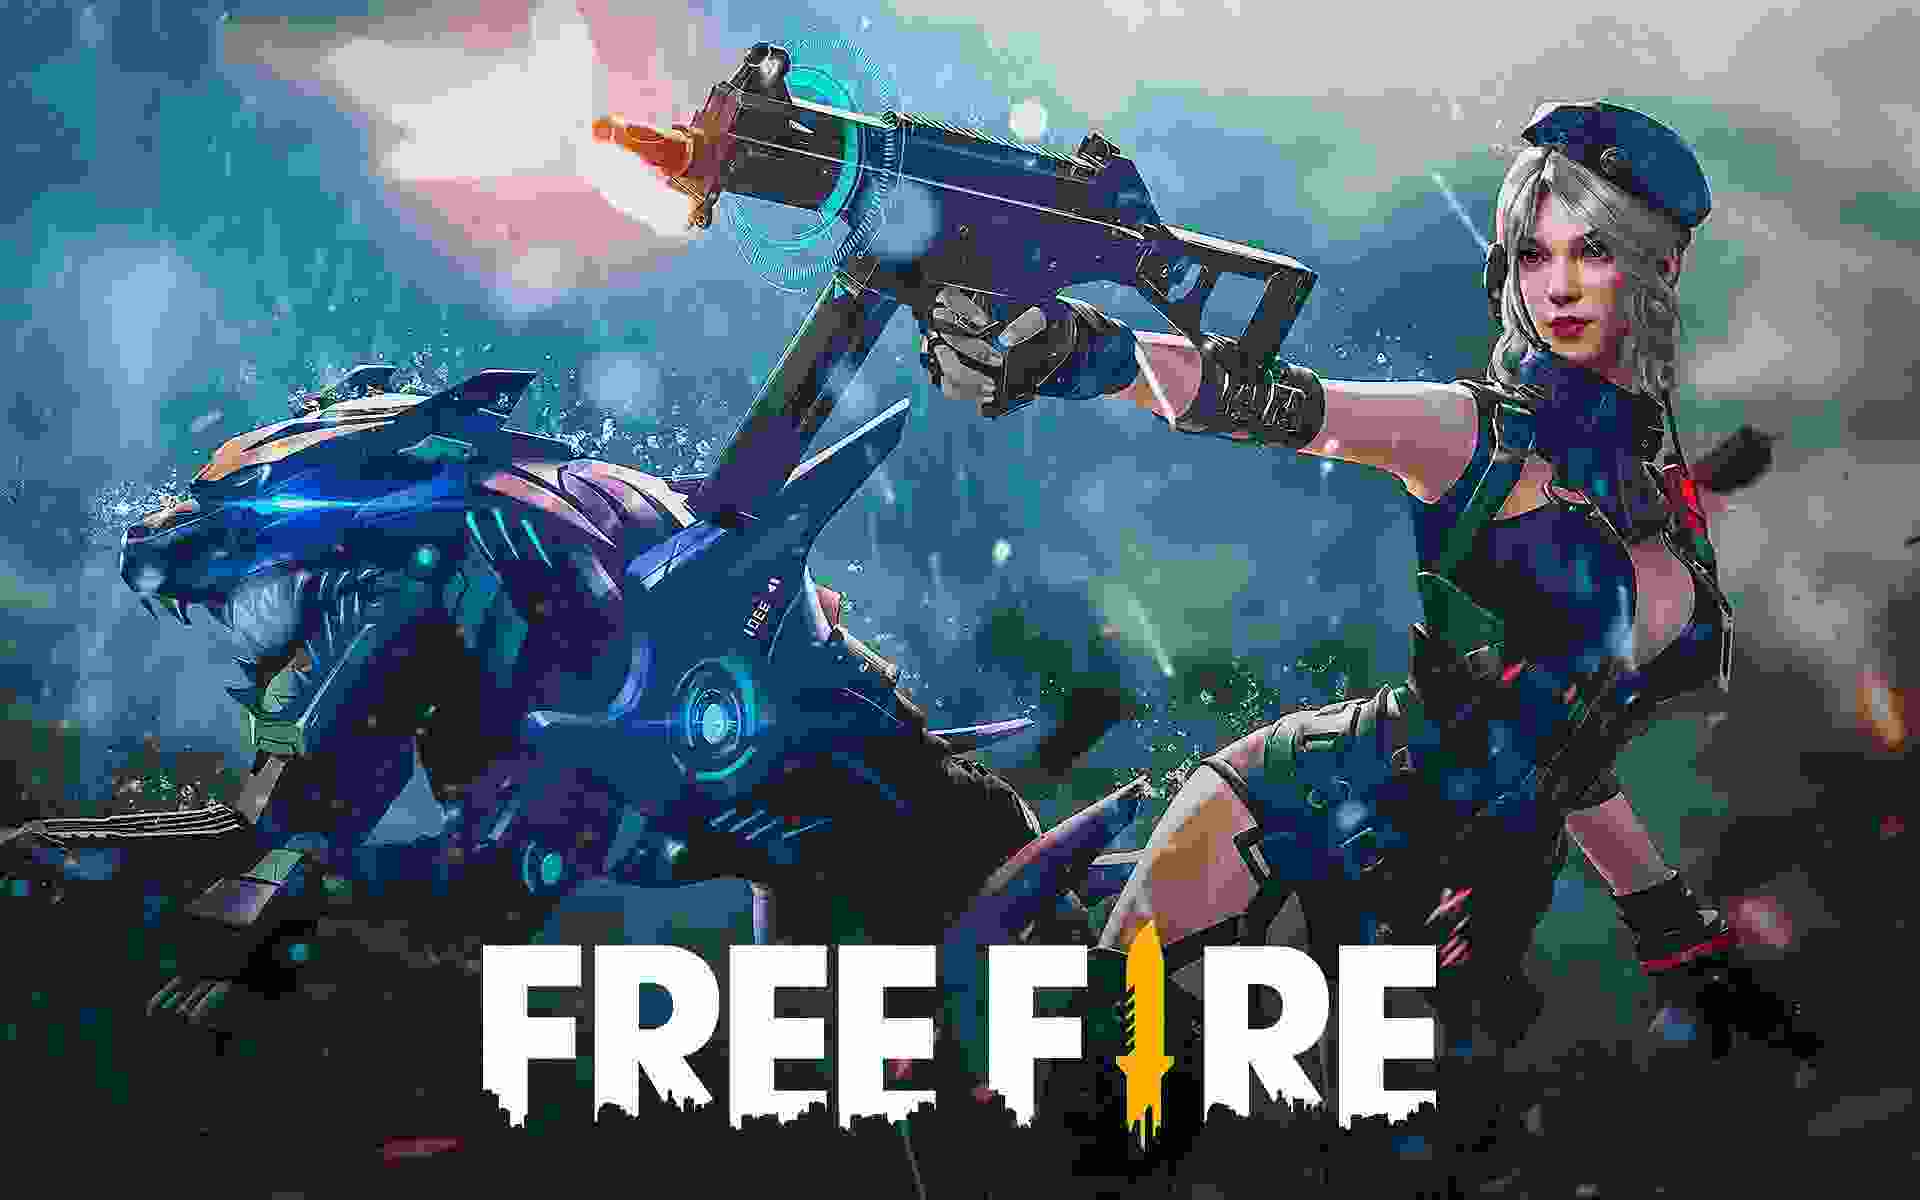 Free Fire season 43 elite pass, Free Fire Season 43 leaks 2021, "Free Fire Season 43 leaks, free fire elite pass